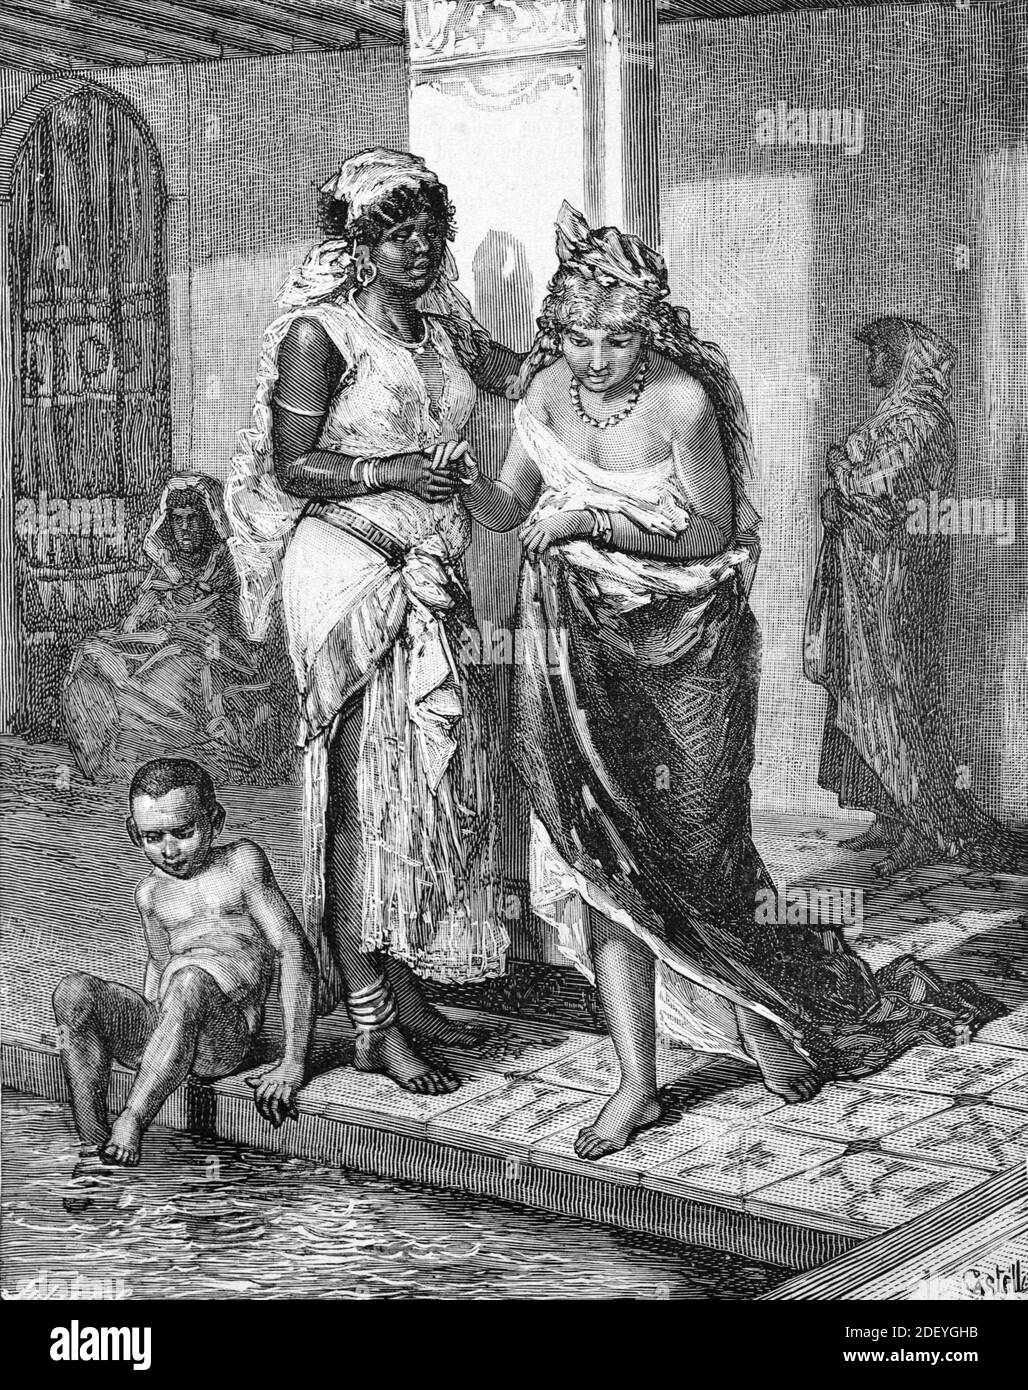 Femme marocaine et maid ou esclave africain dans un bain public, hammam, hammam, salle de bain publique ou bains turcs Maroc (Engr Castelli, 1884) gravure ou illustration d'époque Banque D'Images